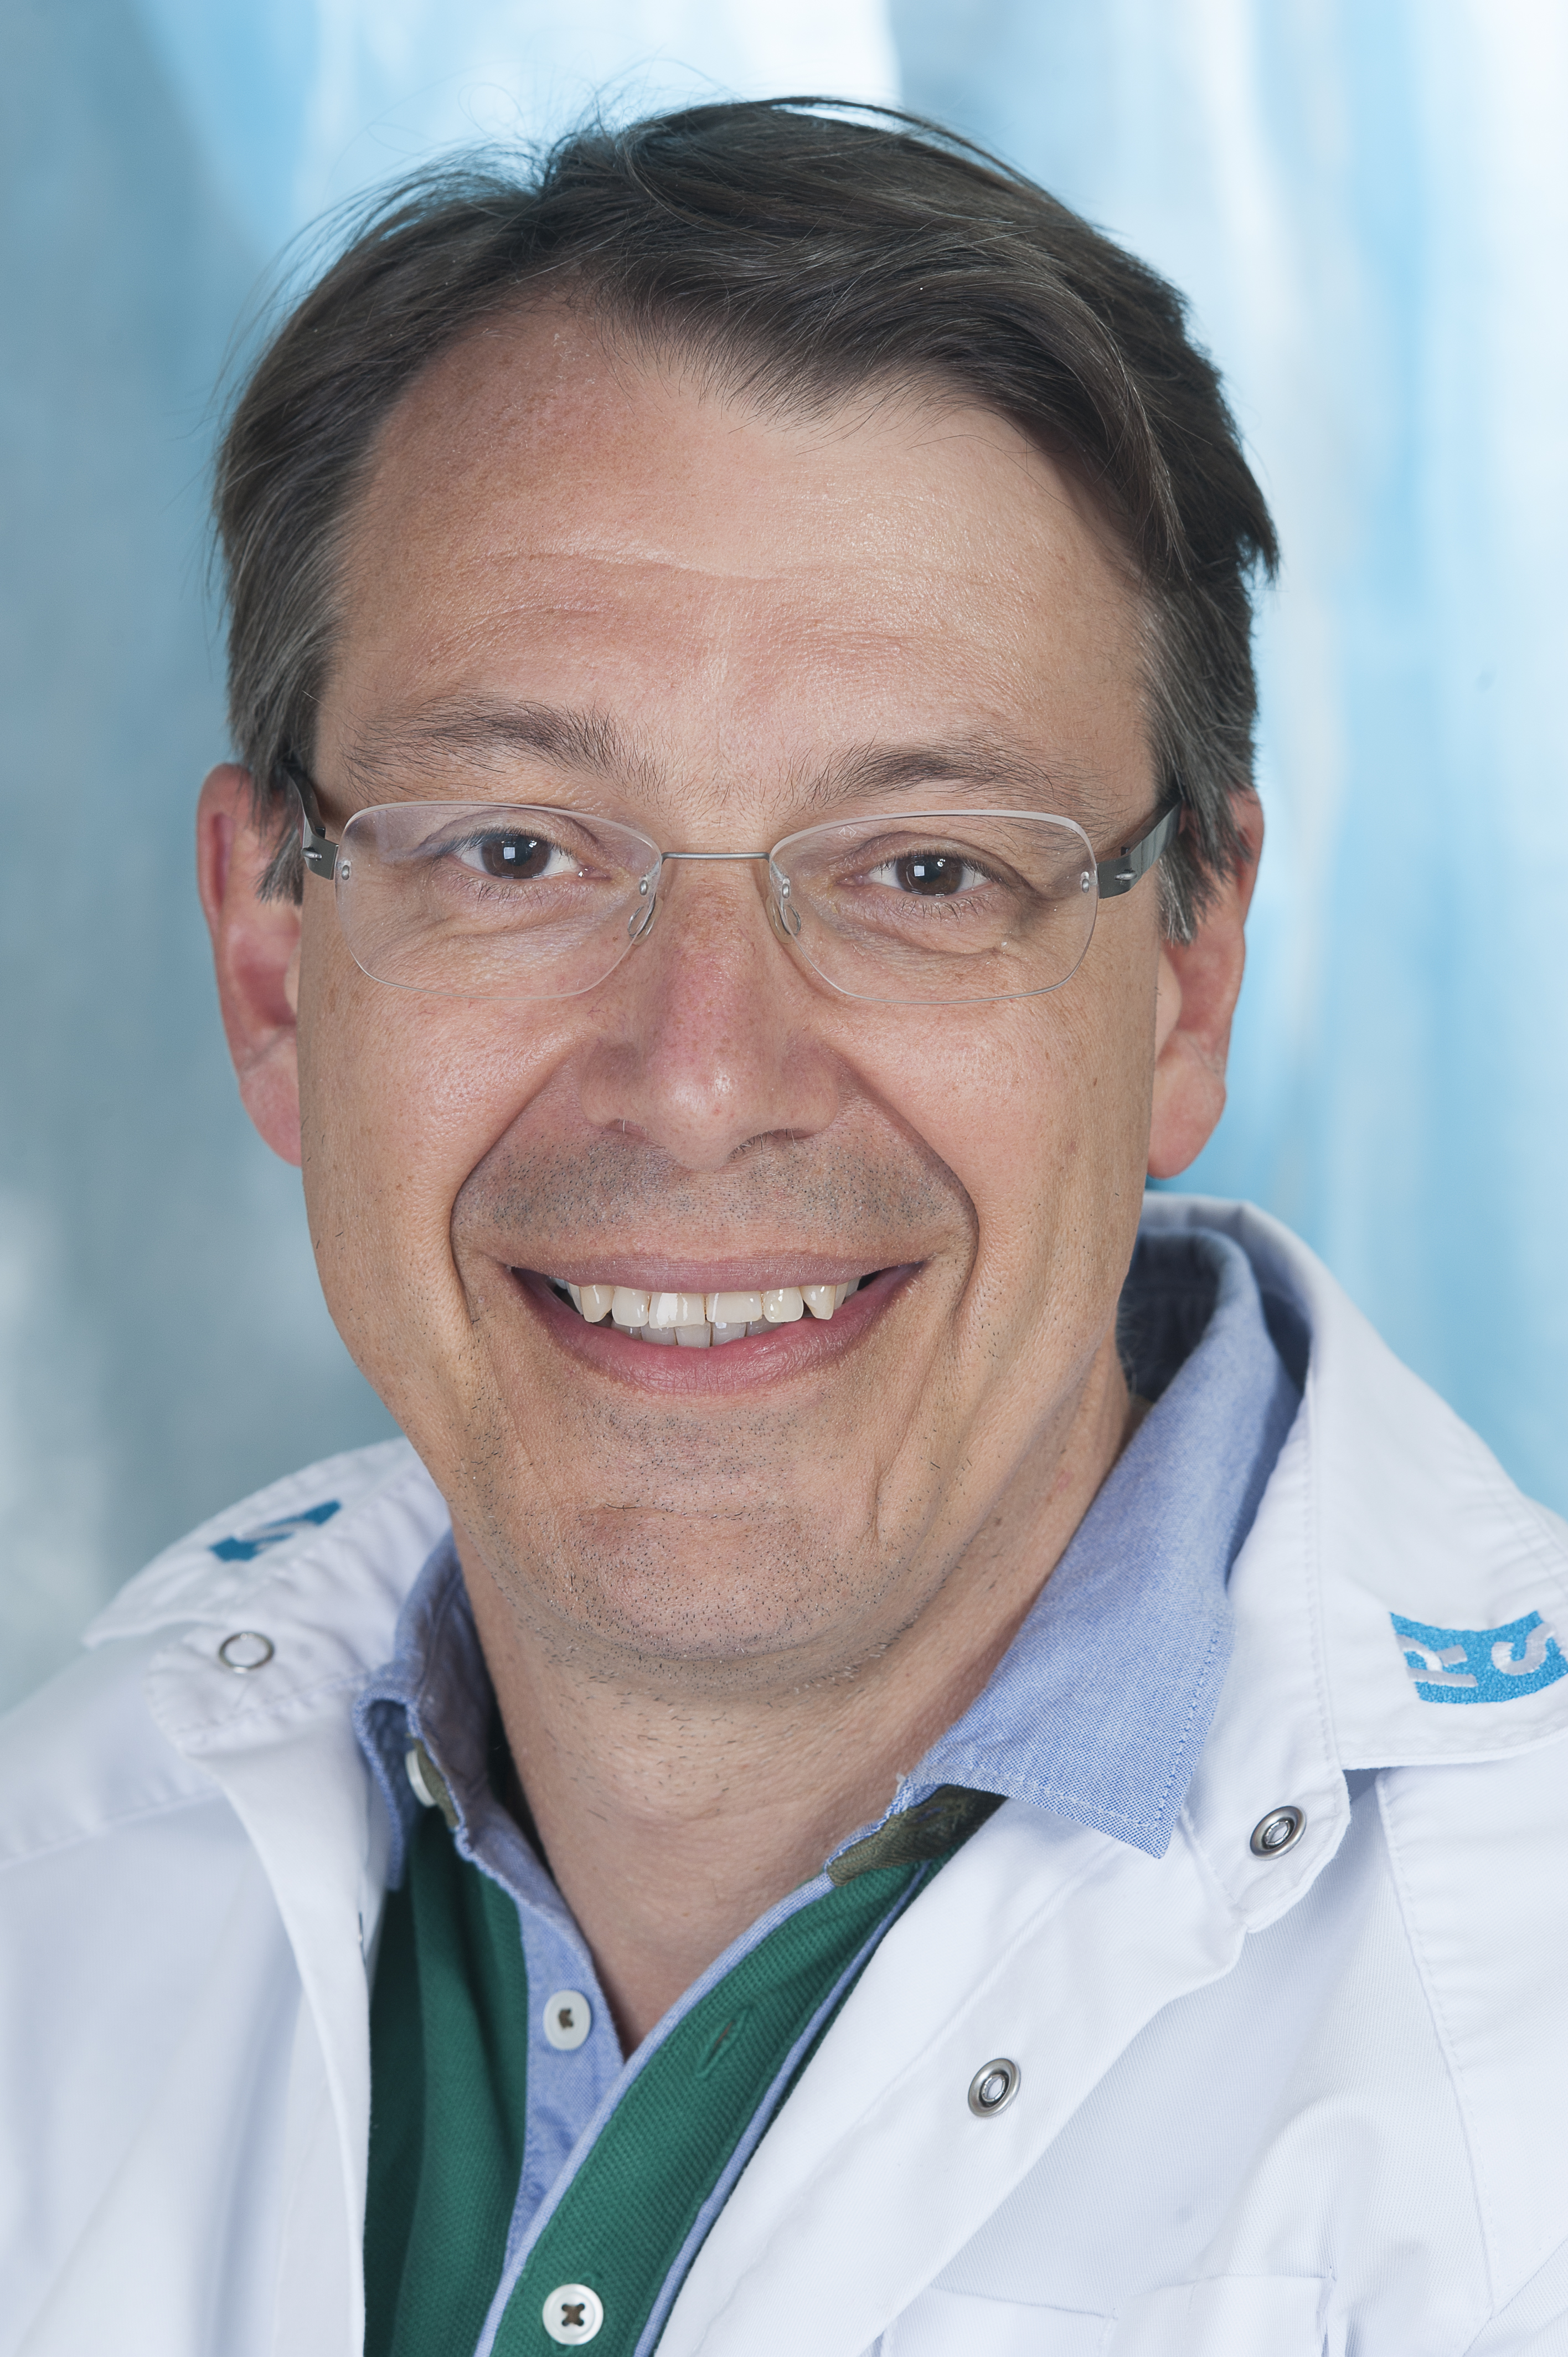 Projet 20 Interviews - Gynécologue Dr. Marc Stieber 